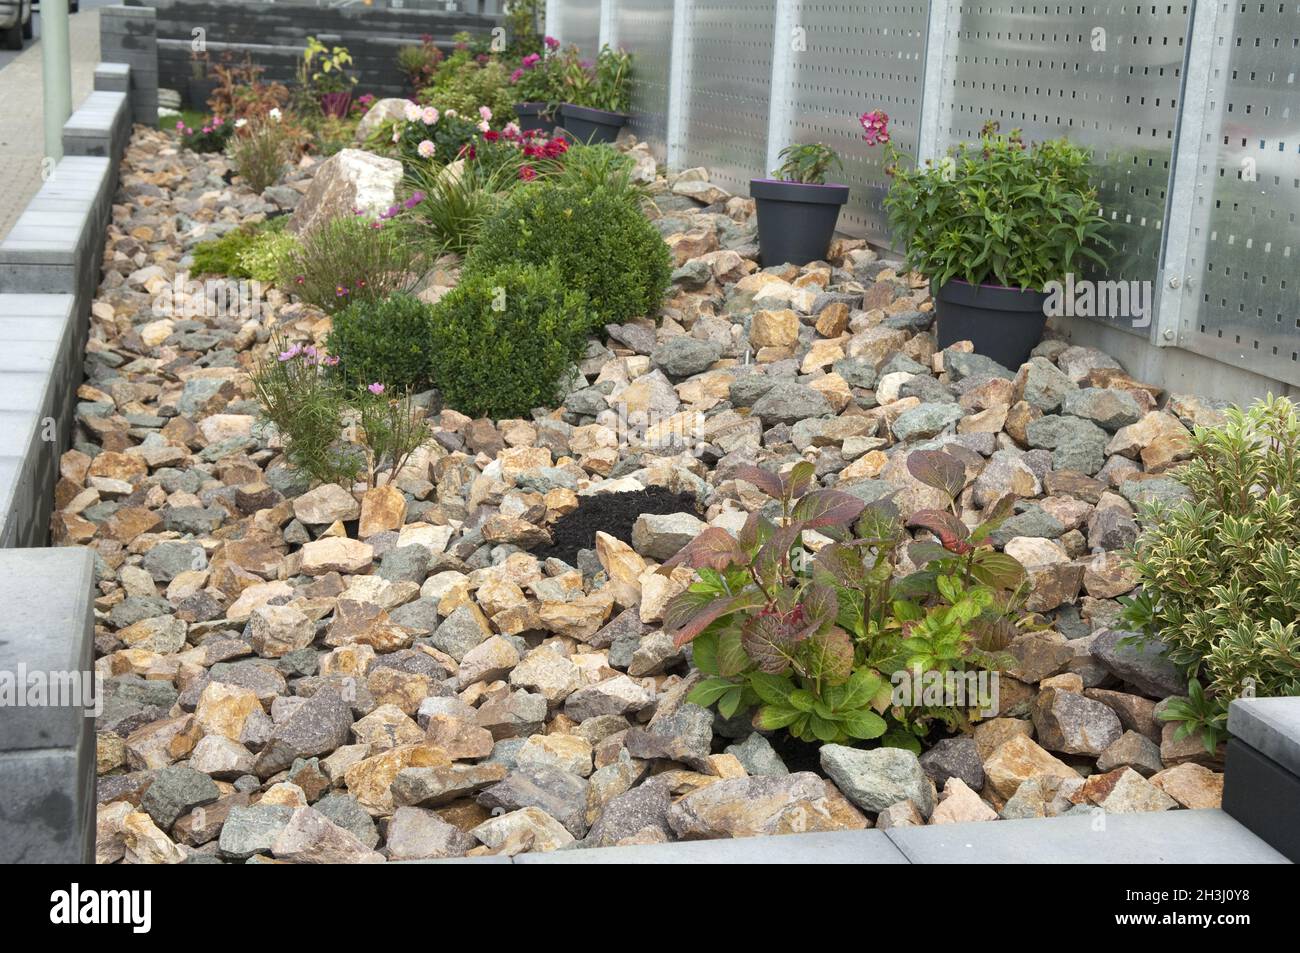 Rock garden, Stock Photo